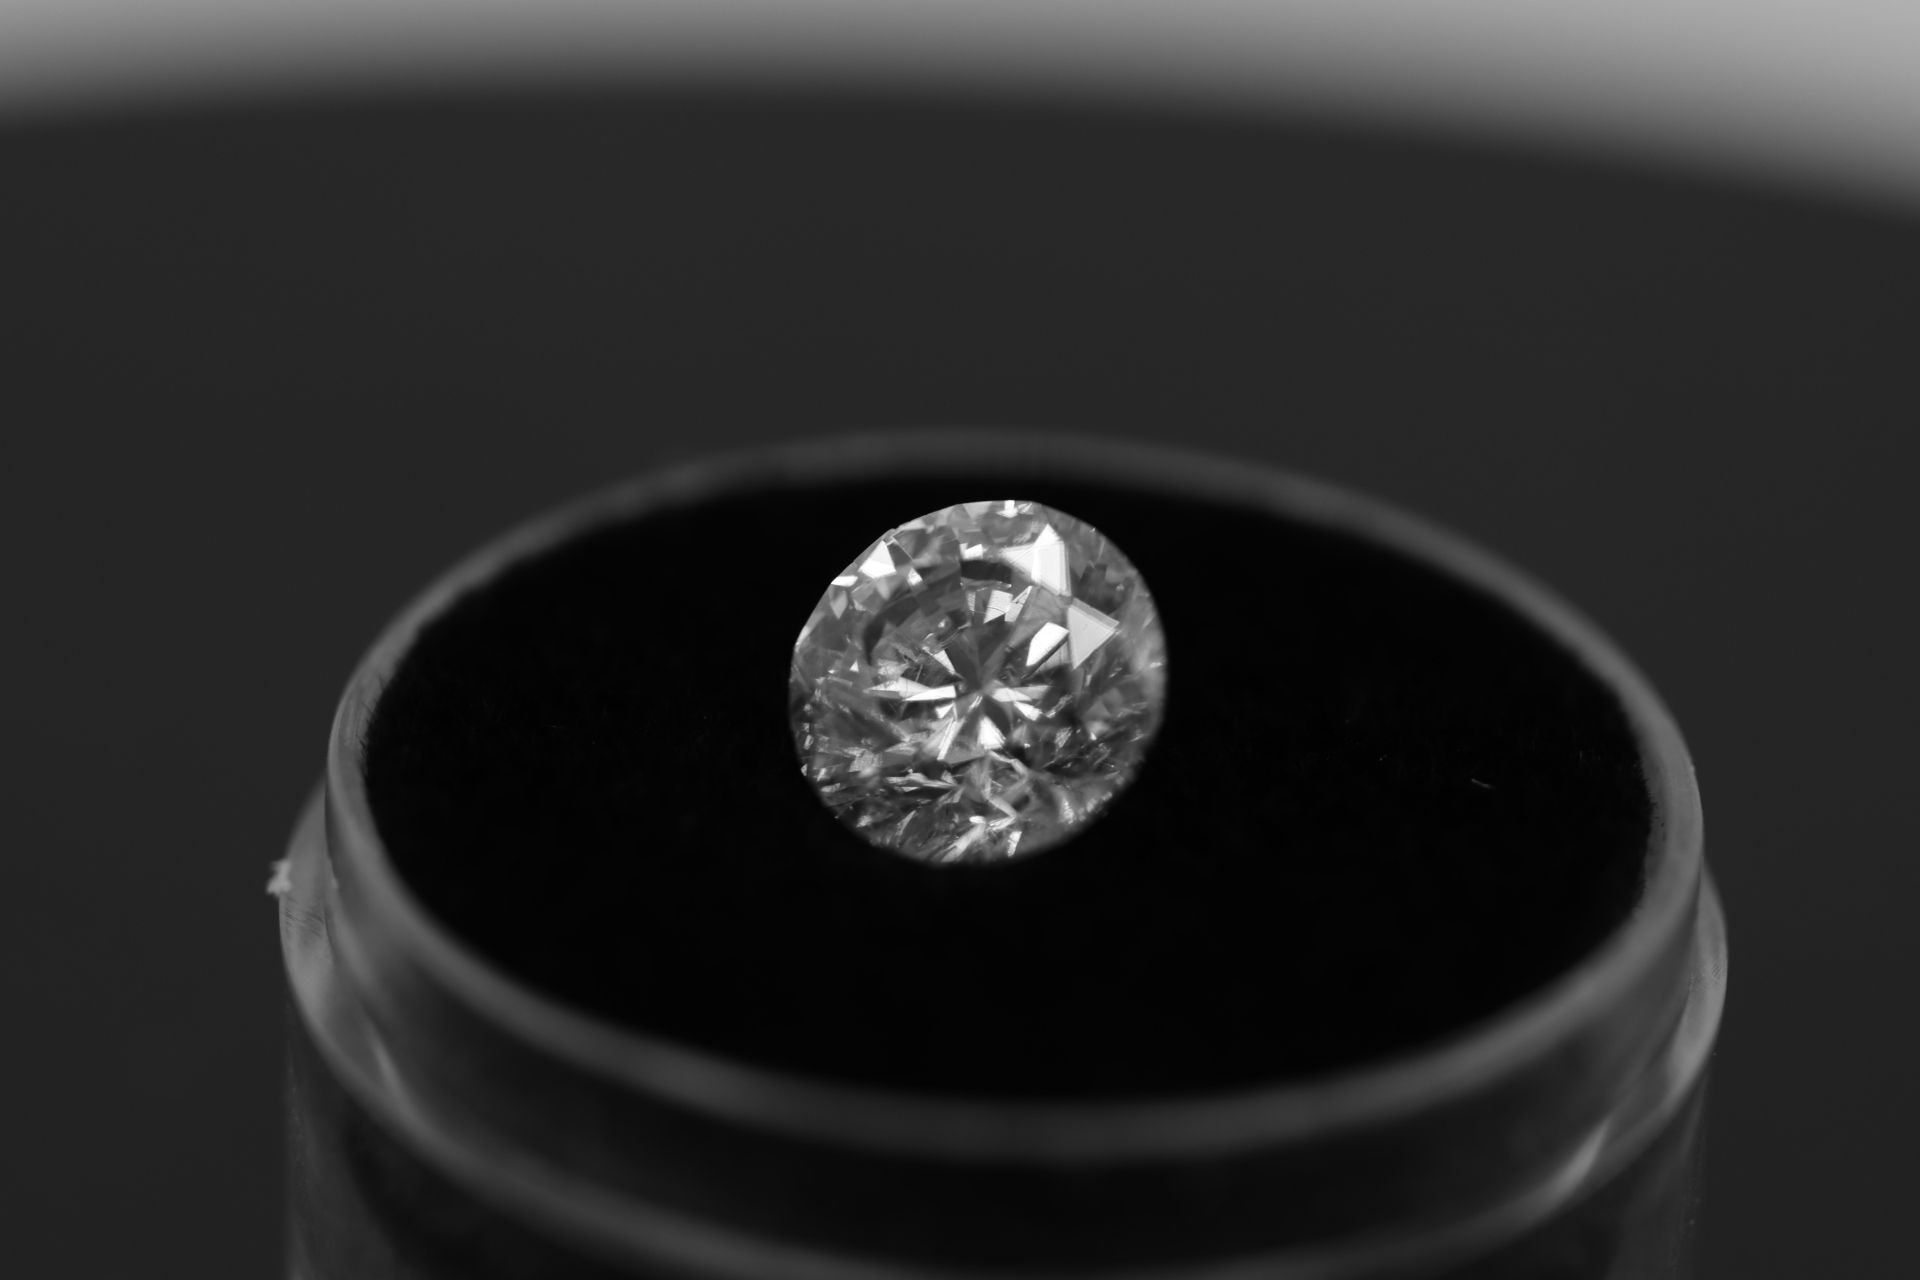 Single - Round Brilliant Cut Natural Diamond 2.07 Carat Colour E Clarity VS2 - DGI 142557706 - Image 13 of 14